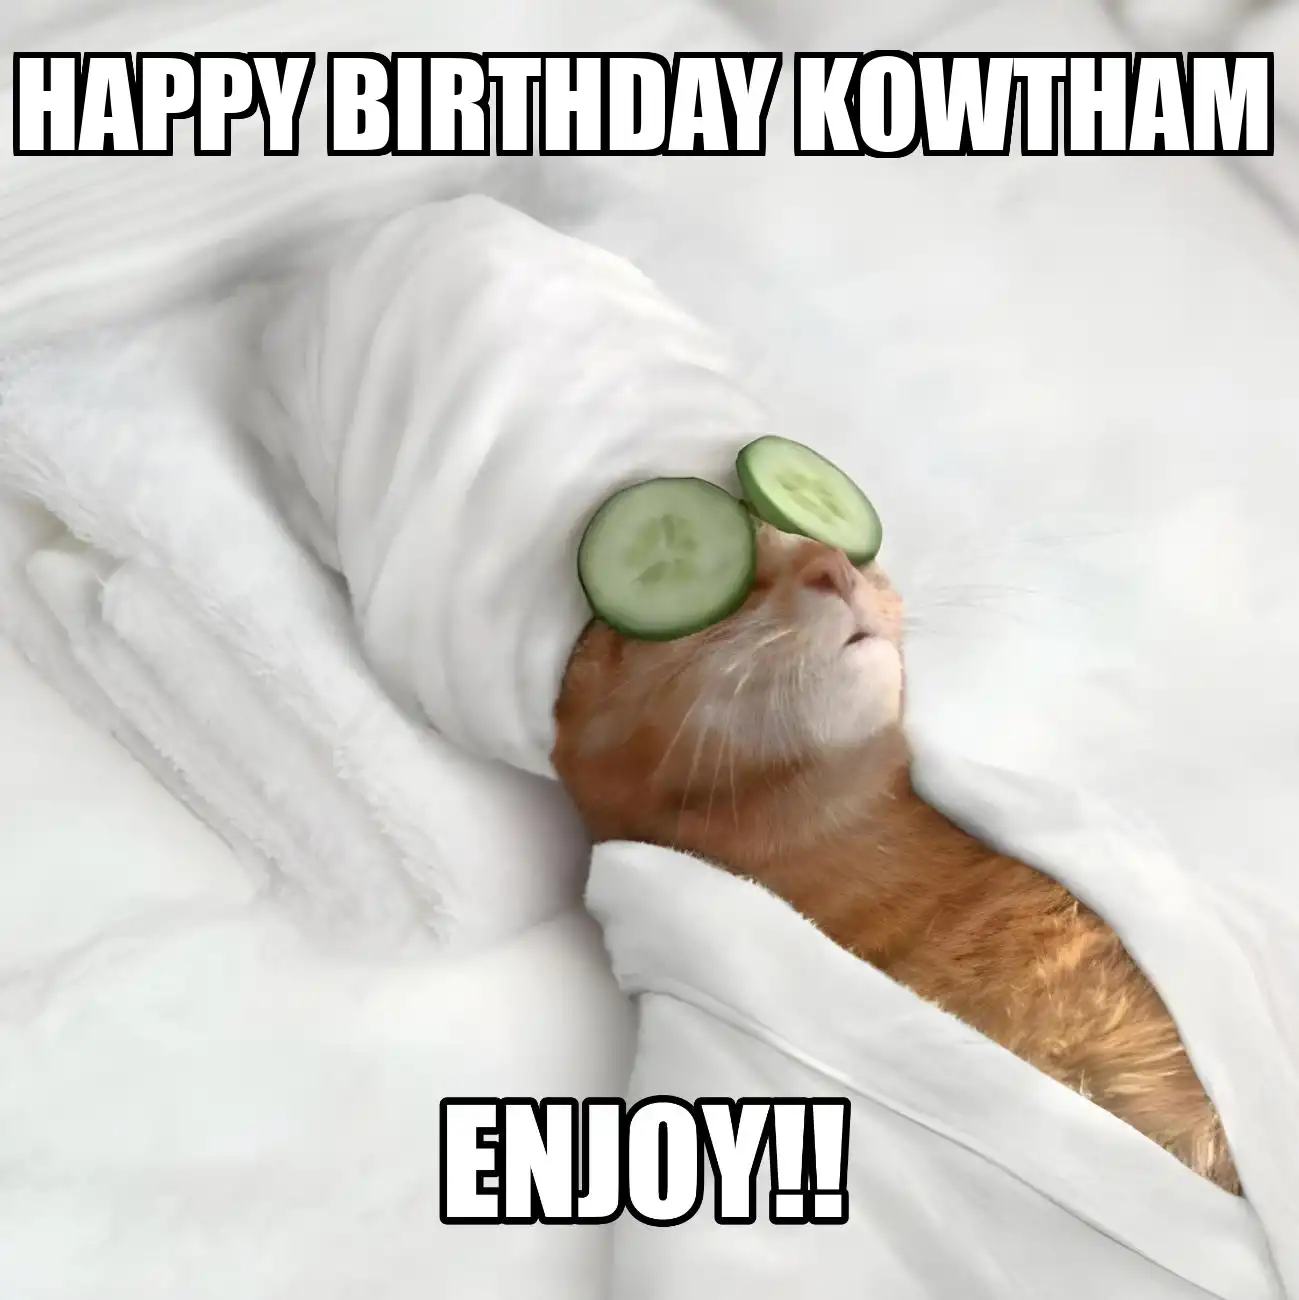 Happy Birthday Kowtham Enjoy Cat Meme